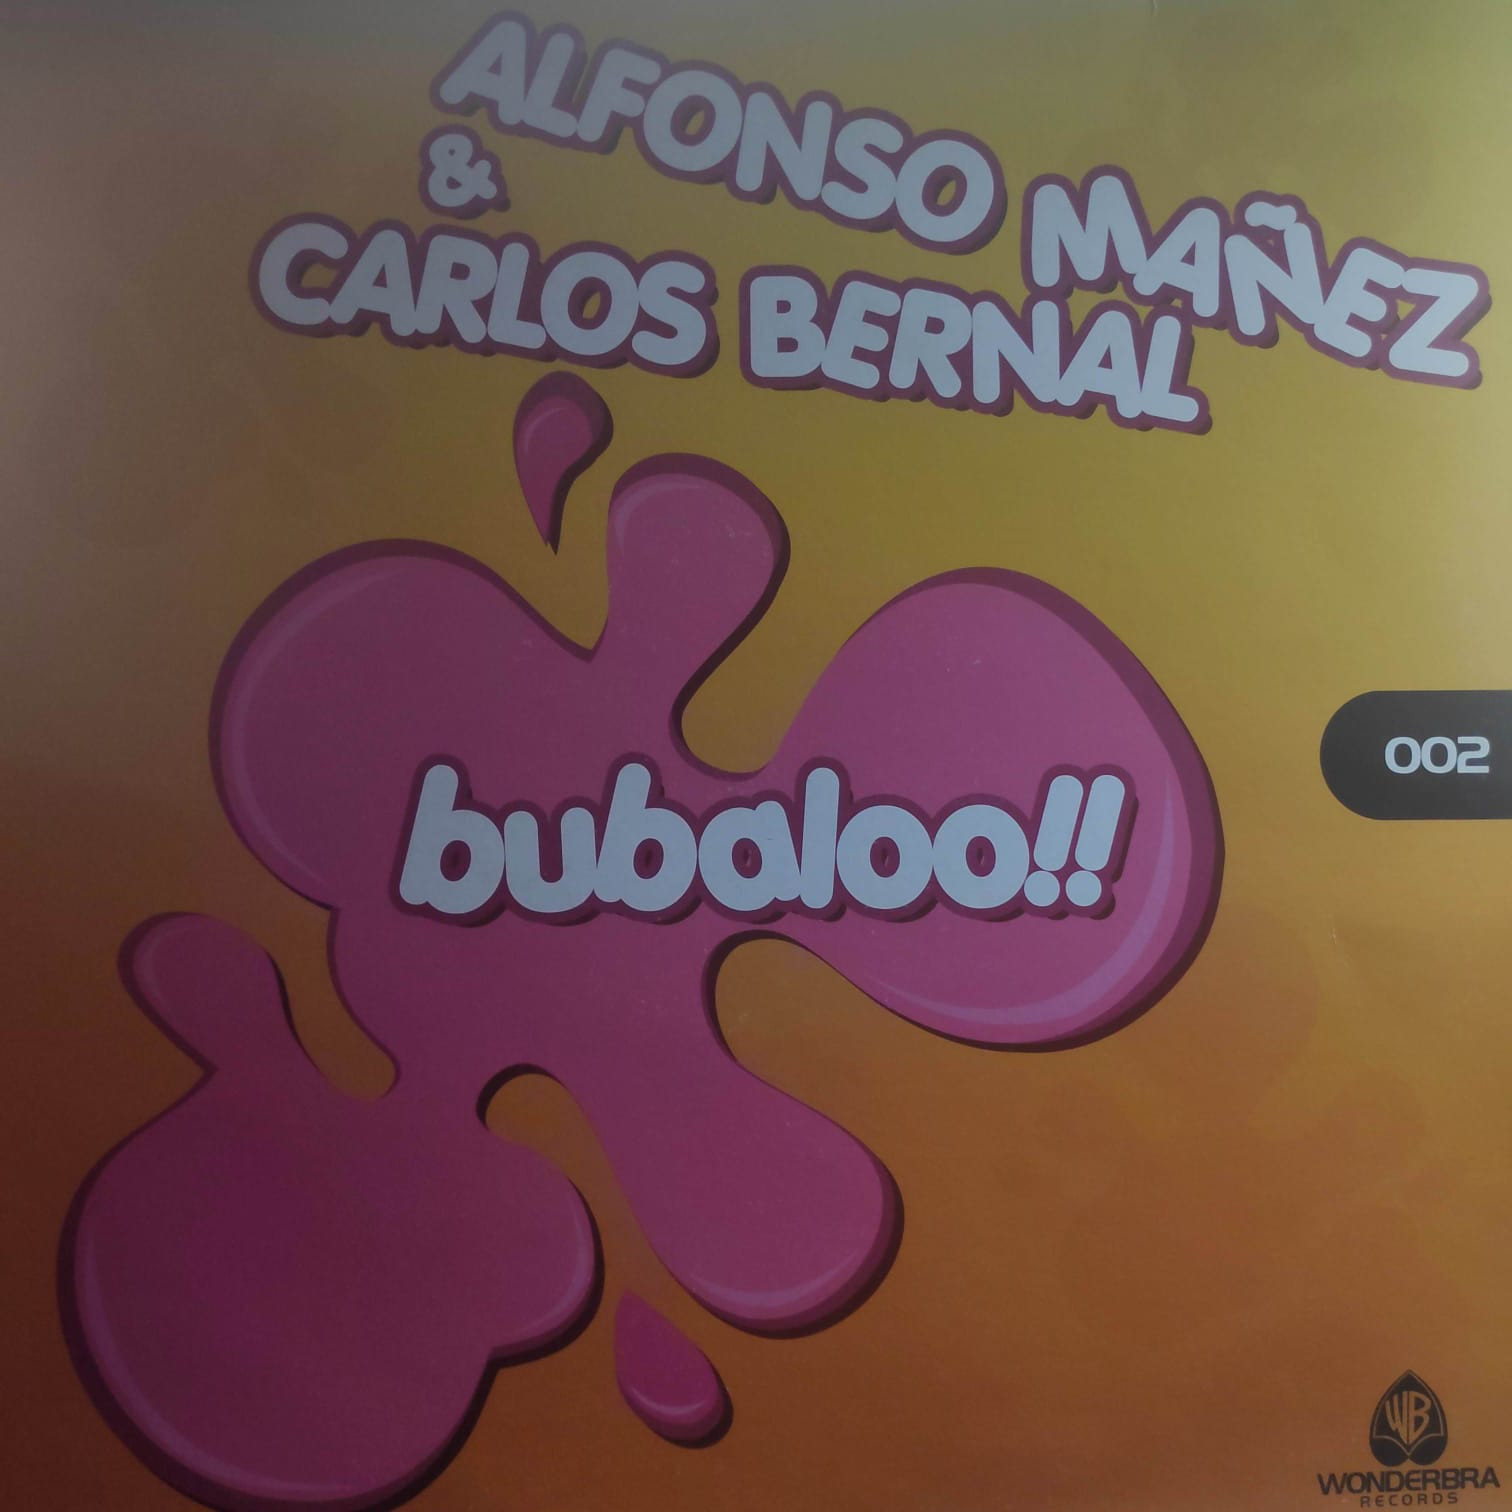 (15396) Dj Alfonso Mañez & Carlos Bernal ‎– Bubaloo!!